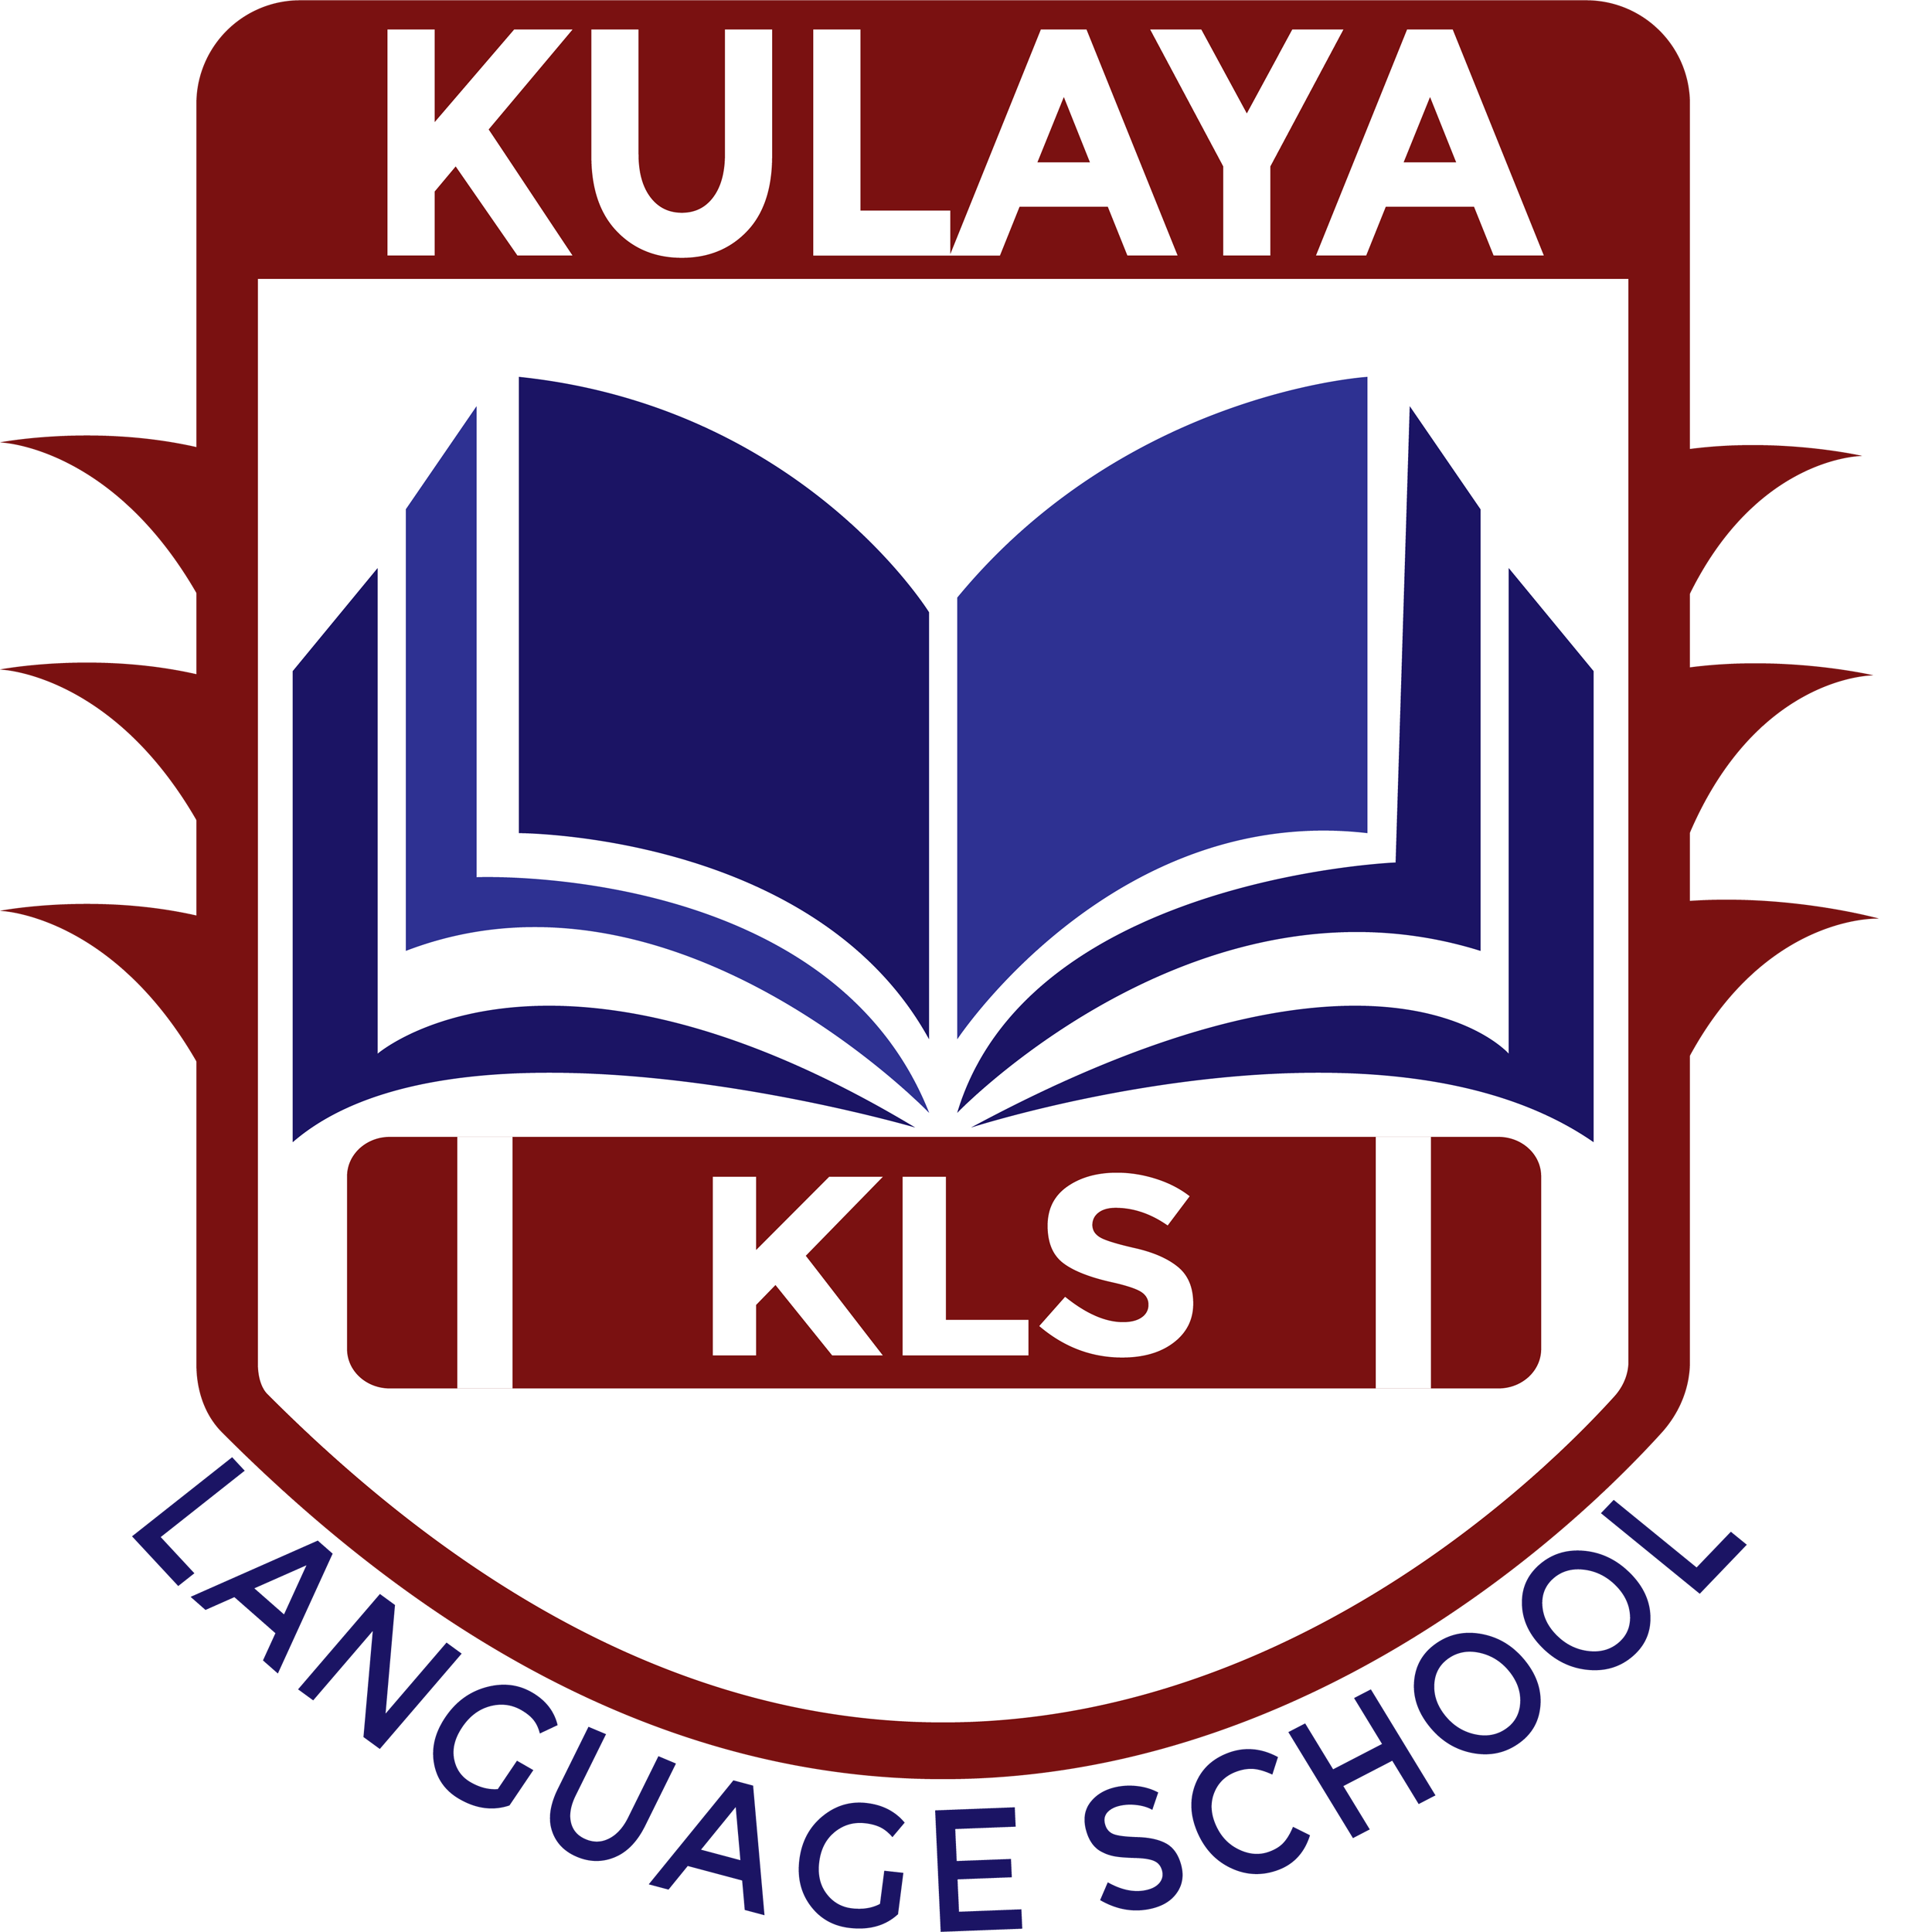 Kulaya language  Academy